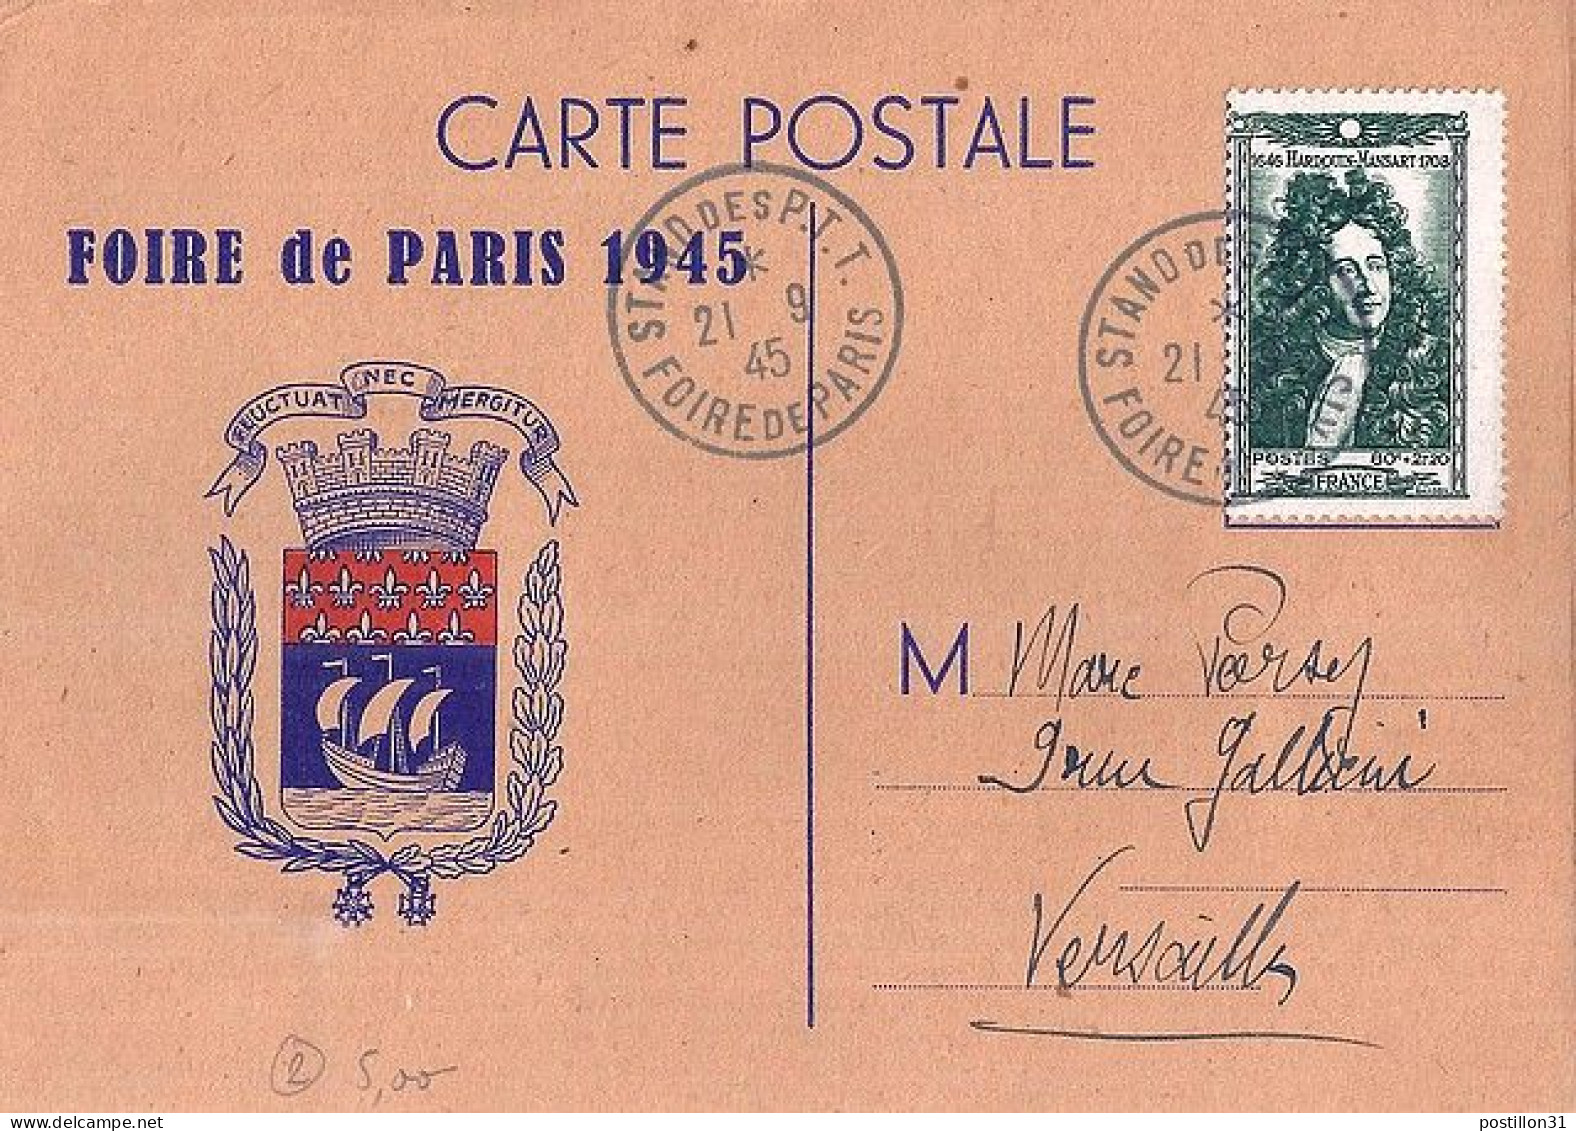 FRANCE N° 613 S/CP DE PARIS/21.9.45 - Lettres & Documents